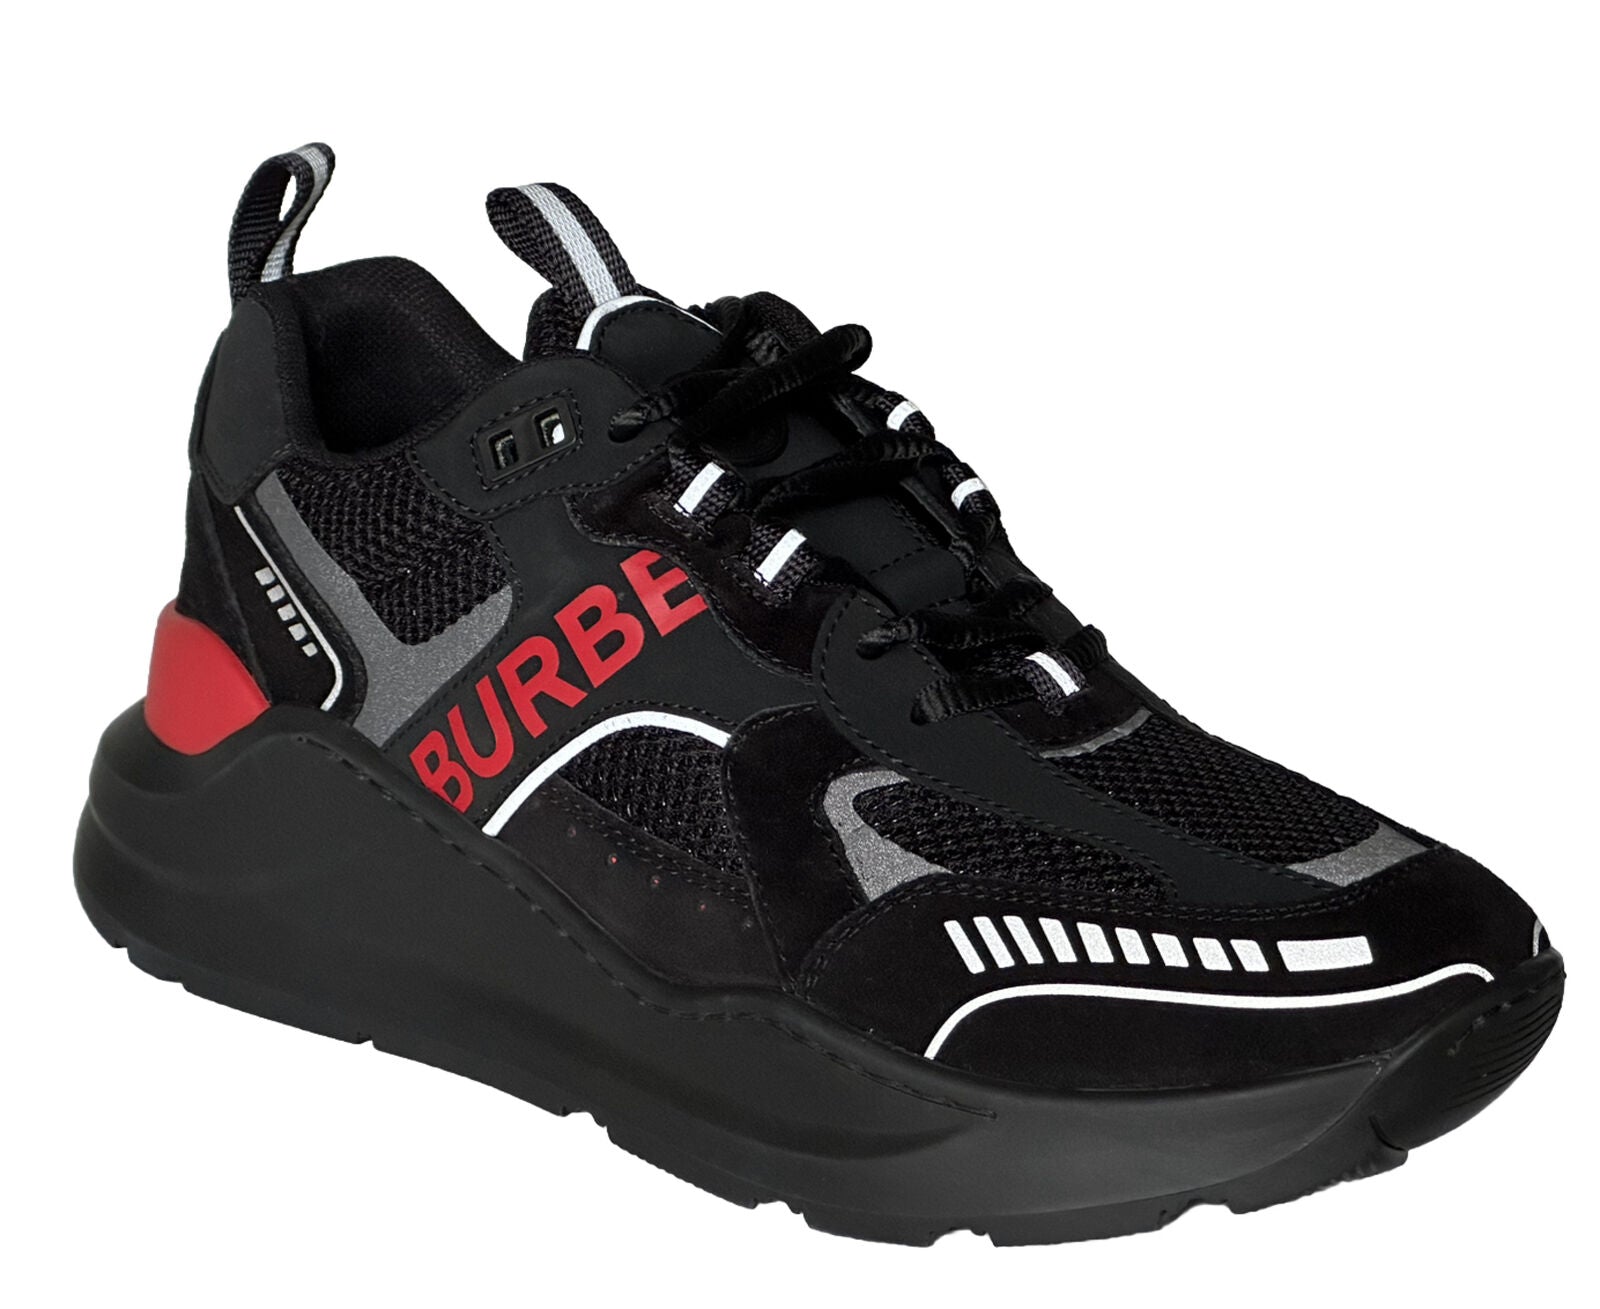 Мужские черные/красные кроссовки Burberry TNR Sean за 850 долларов США 9 США (42 ЕС) 8057350 IT 